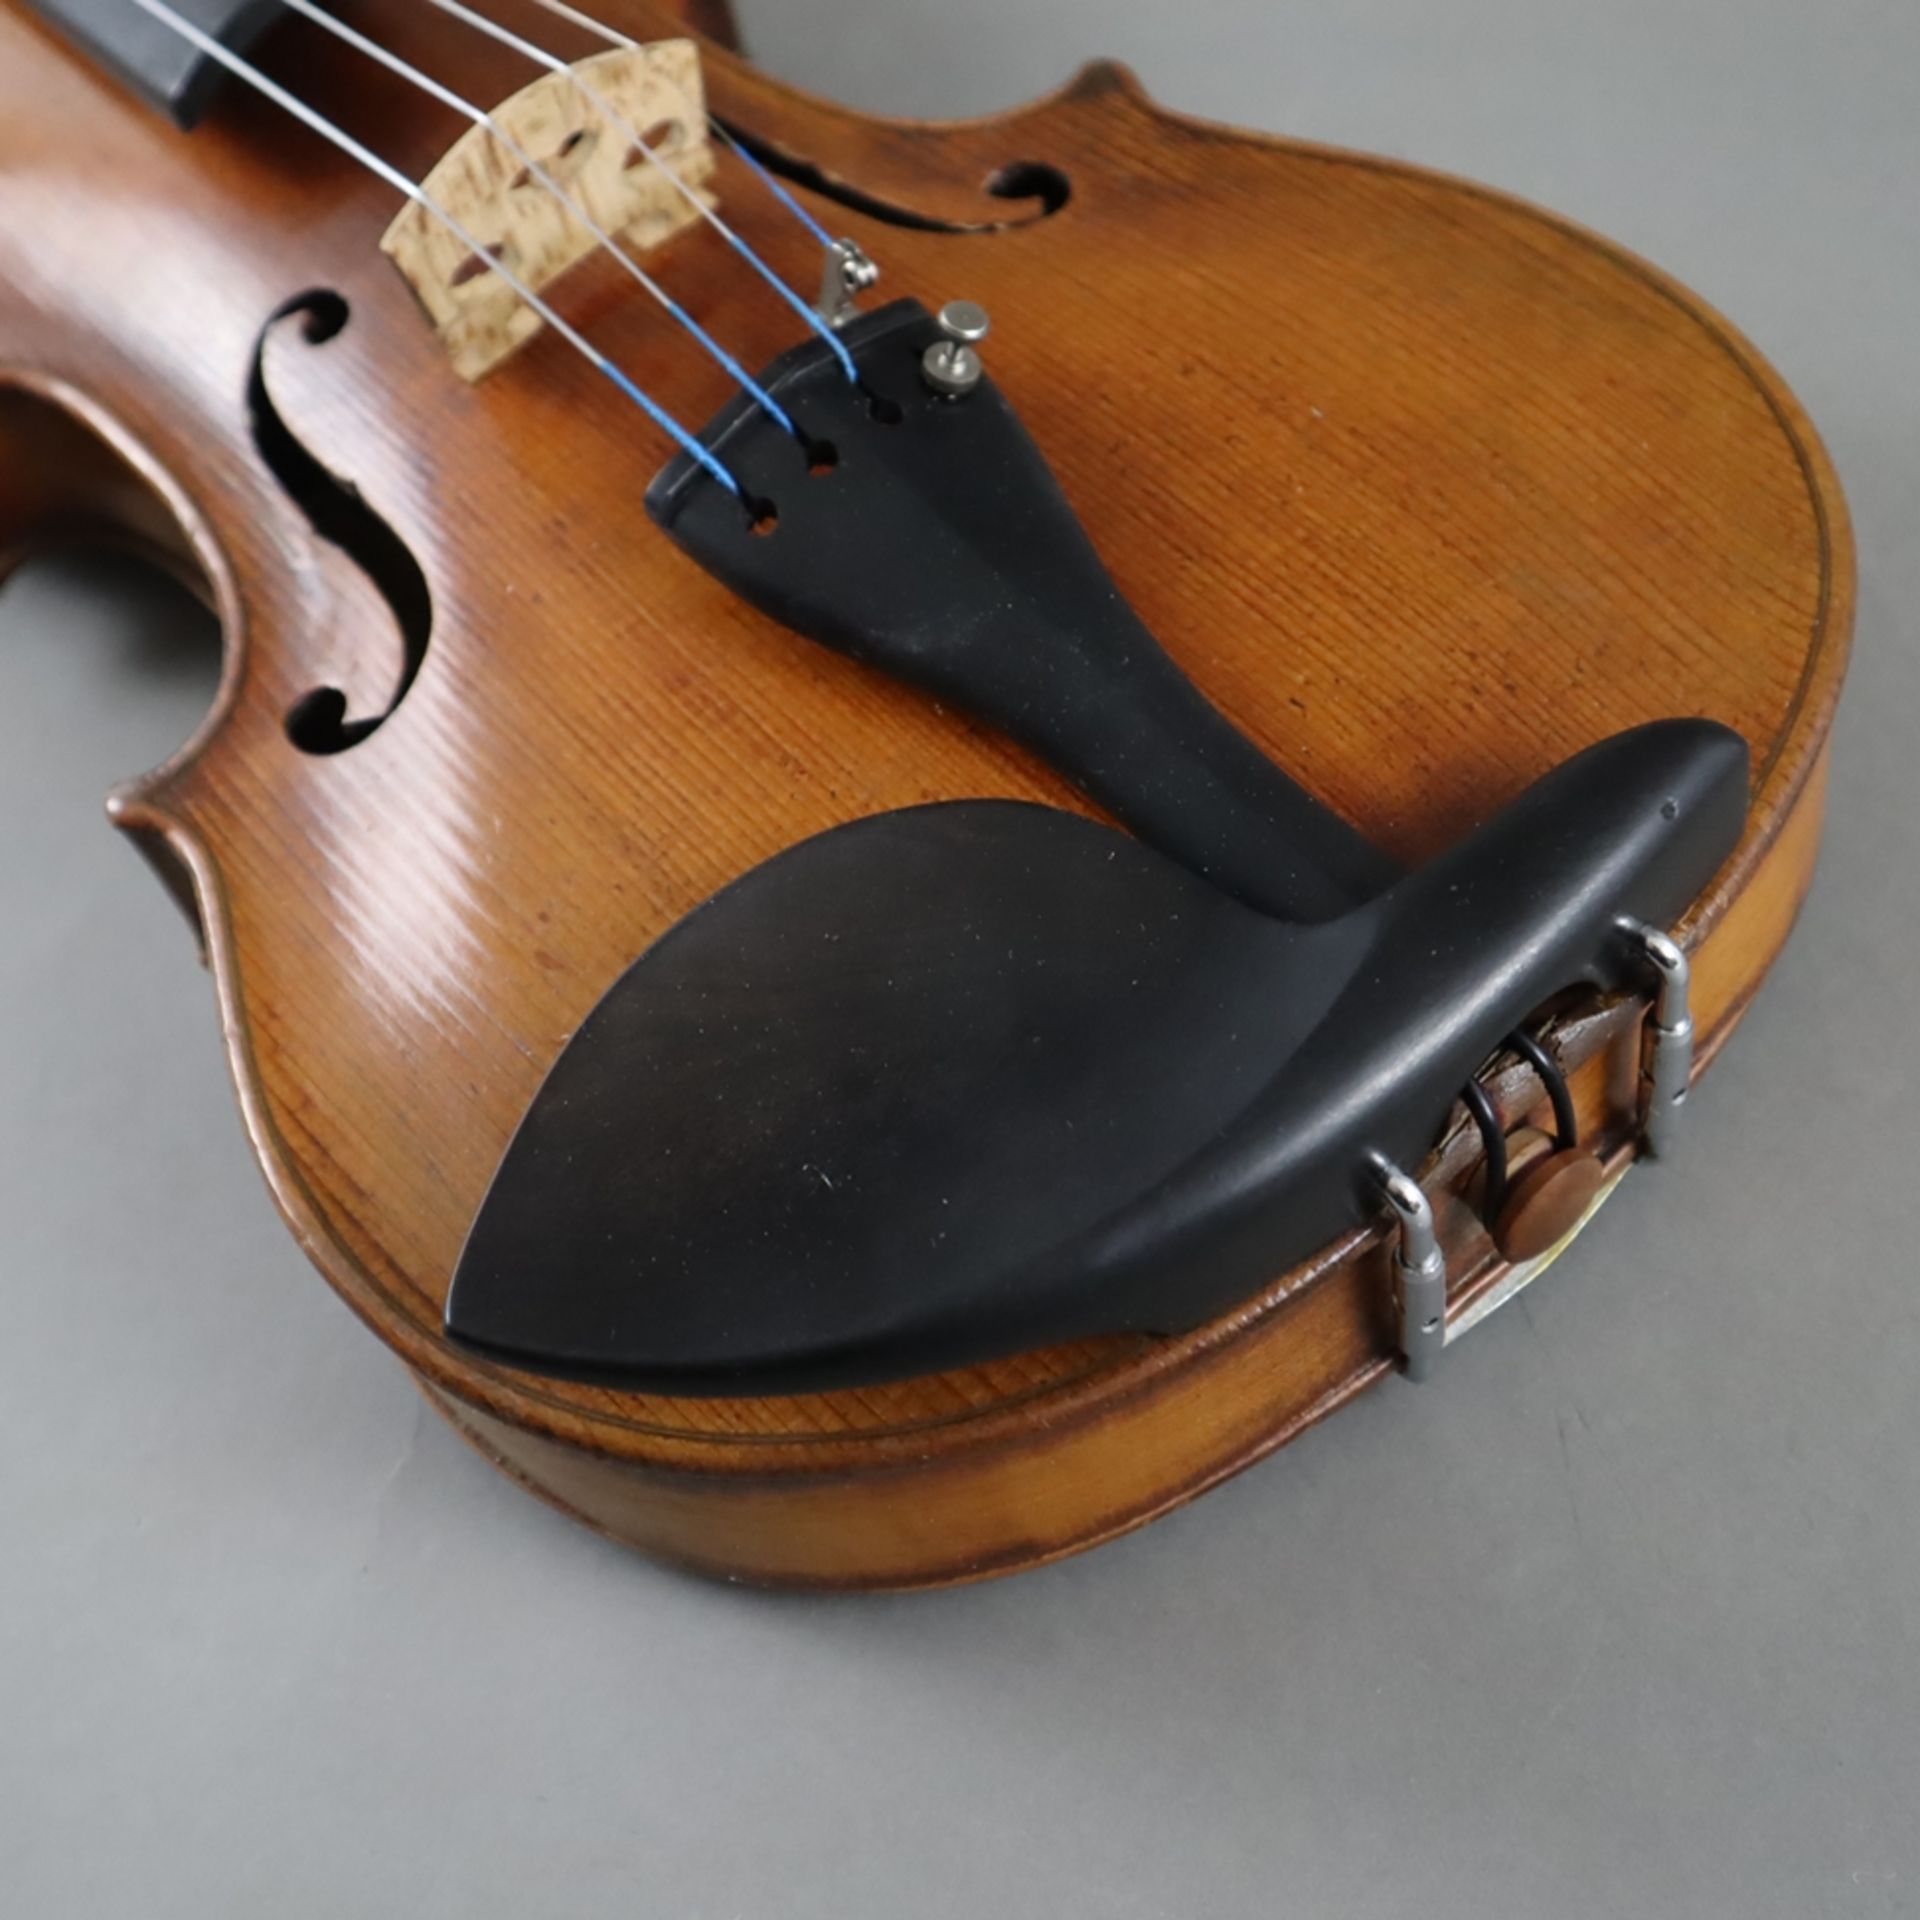 Schmale Geige - Italien, auf dem Faksimile-Etikett bezeichnet "Paolo Leonori / Roma 1949", einteili - Bild 4 aus 7